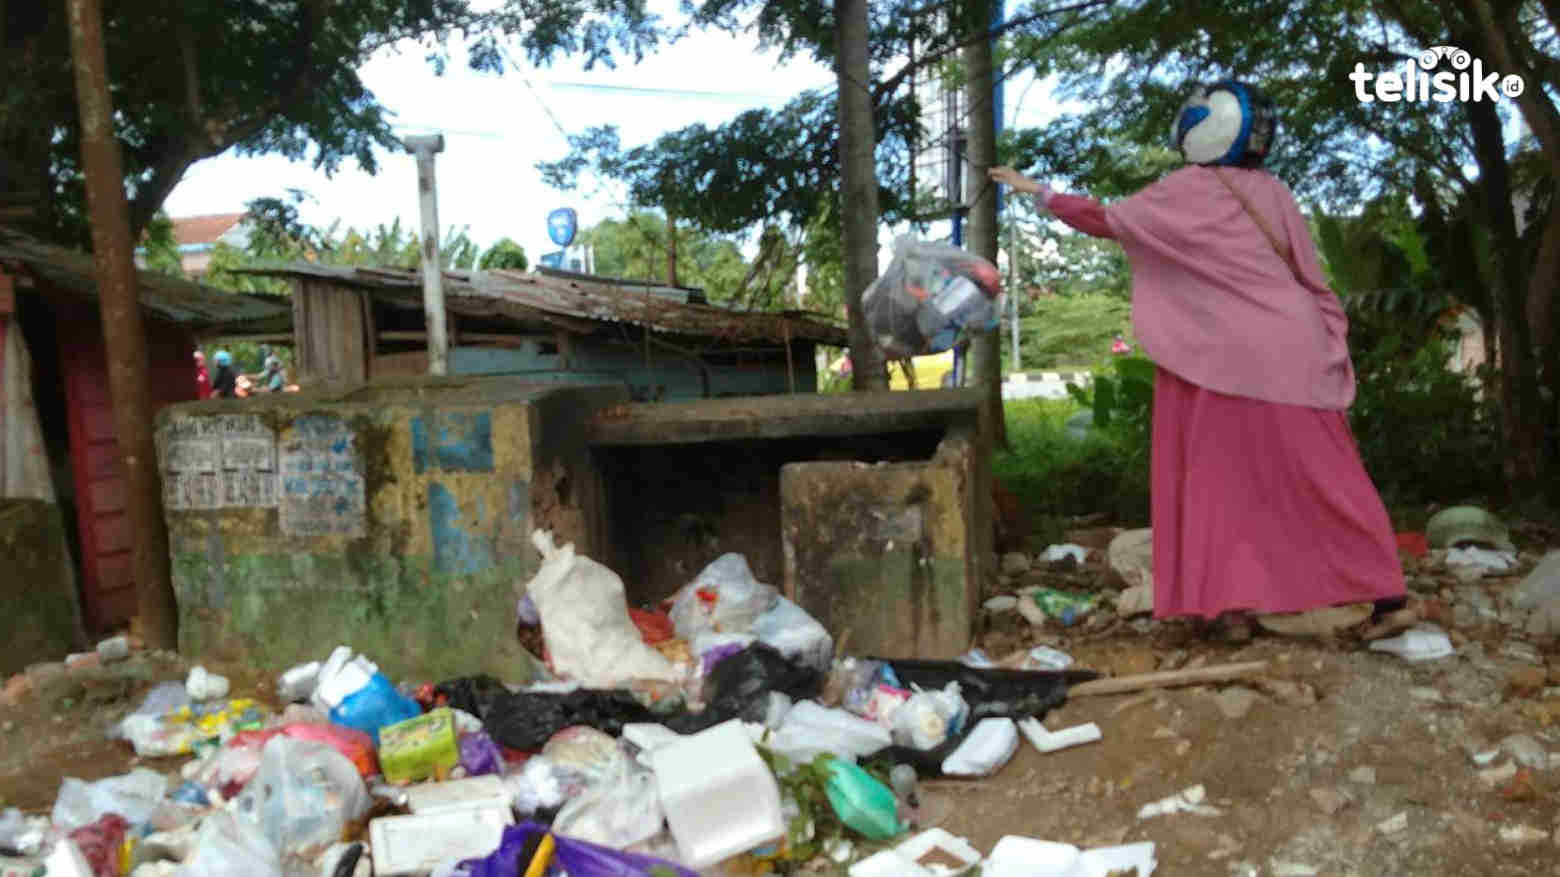 Di Usia 190 Tahun, Warga Kendari Diharap Lebih Tertib Buang Sampah